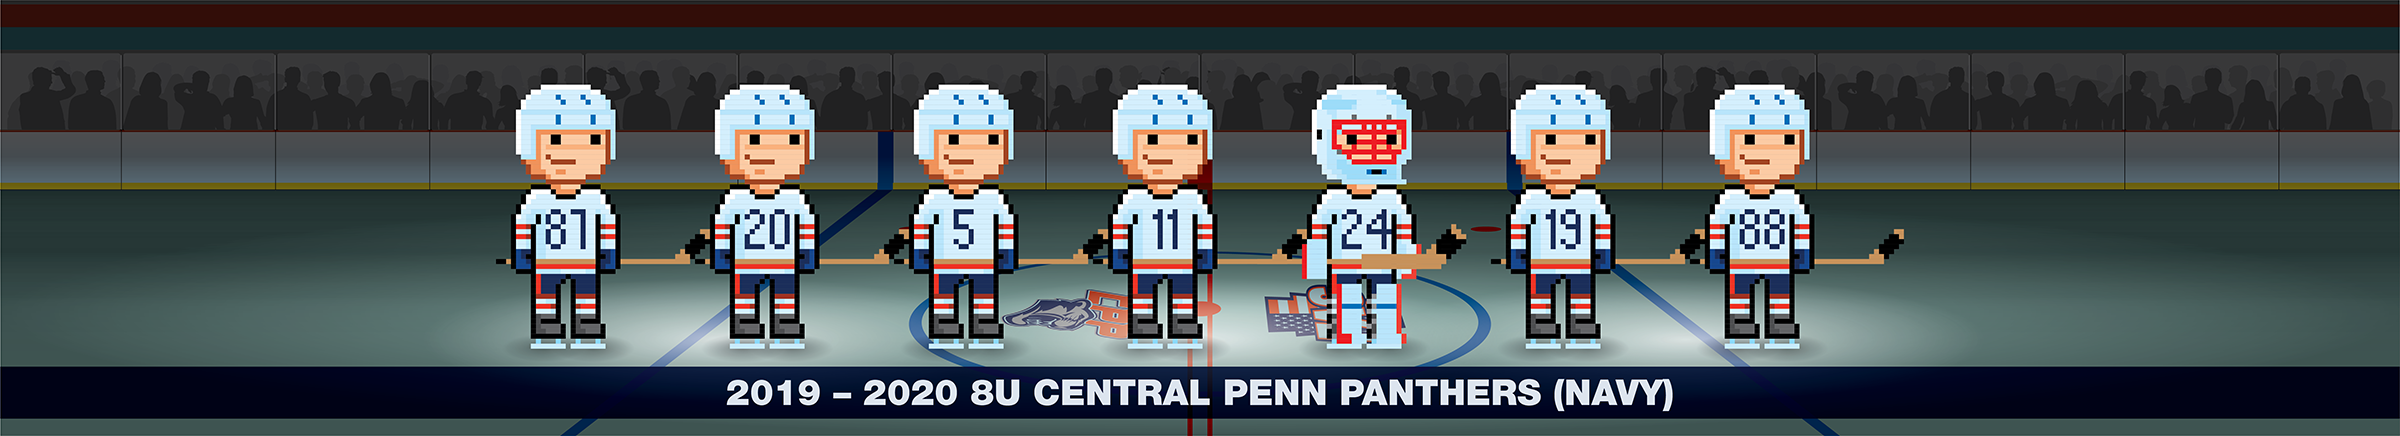 2019 – 20 Central Penn Panthers 8U Navy